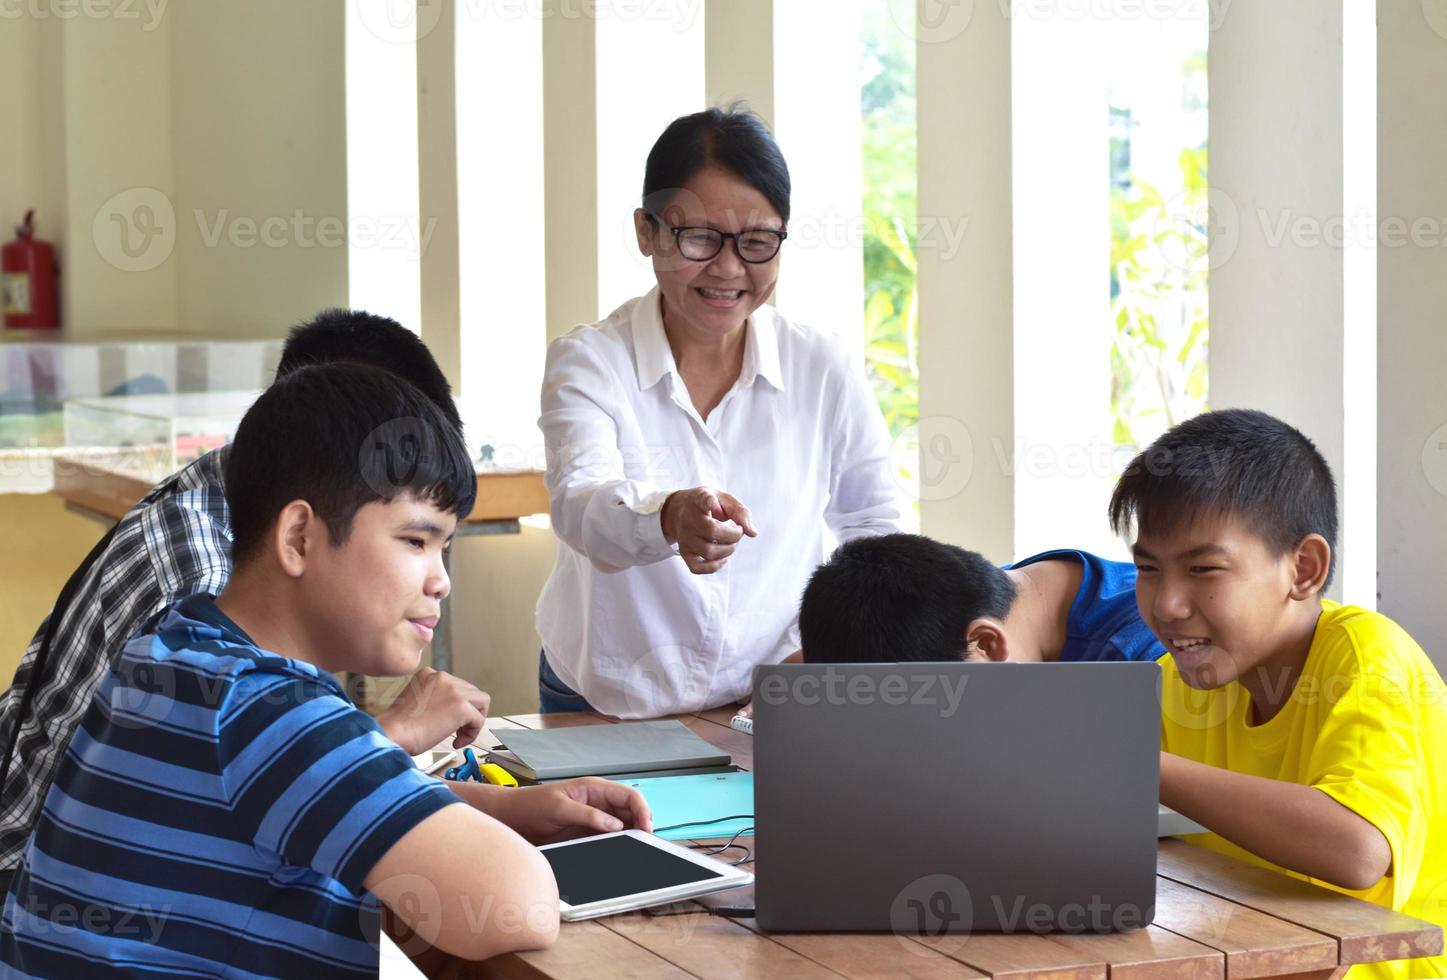 jong Aziatisch tieners en docent, ze zijn in klas, studenten aan het doen werkblad en luisteren naar haar adviezen over school- projecteren, volwassen helpt kinderen naar Doen school- project concept. foto